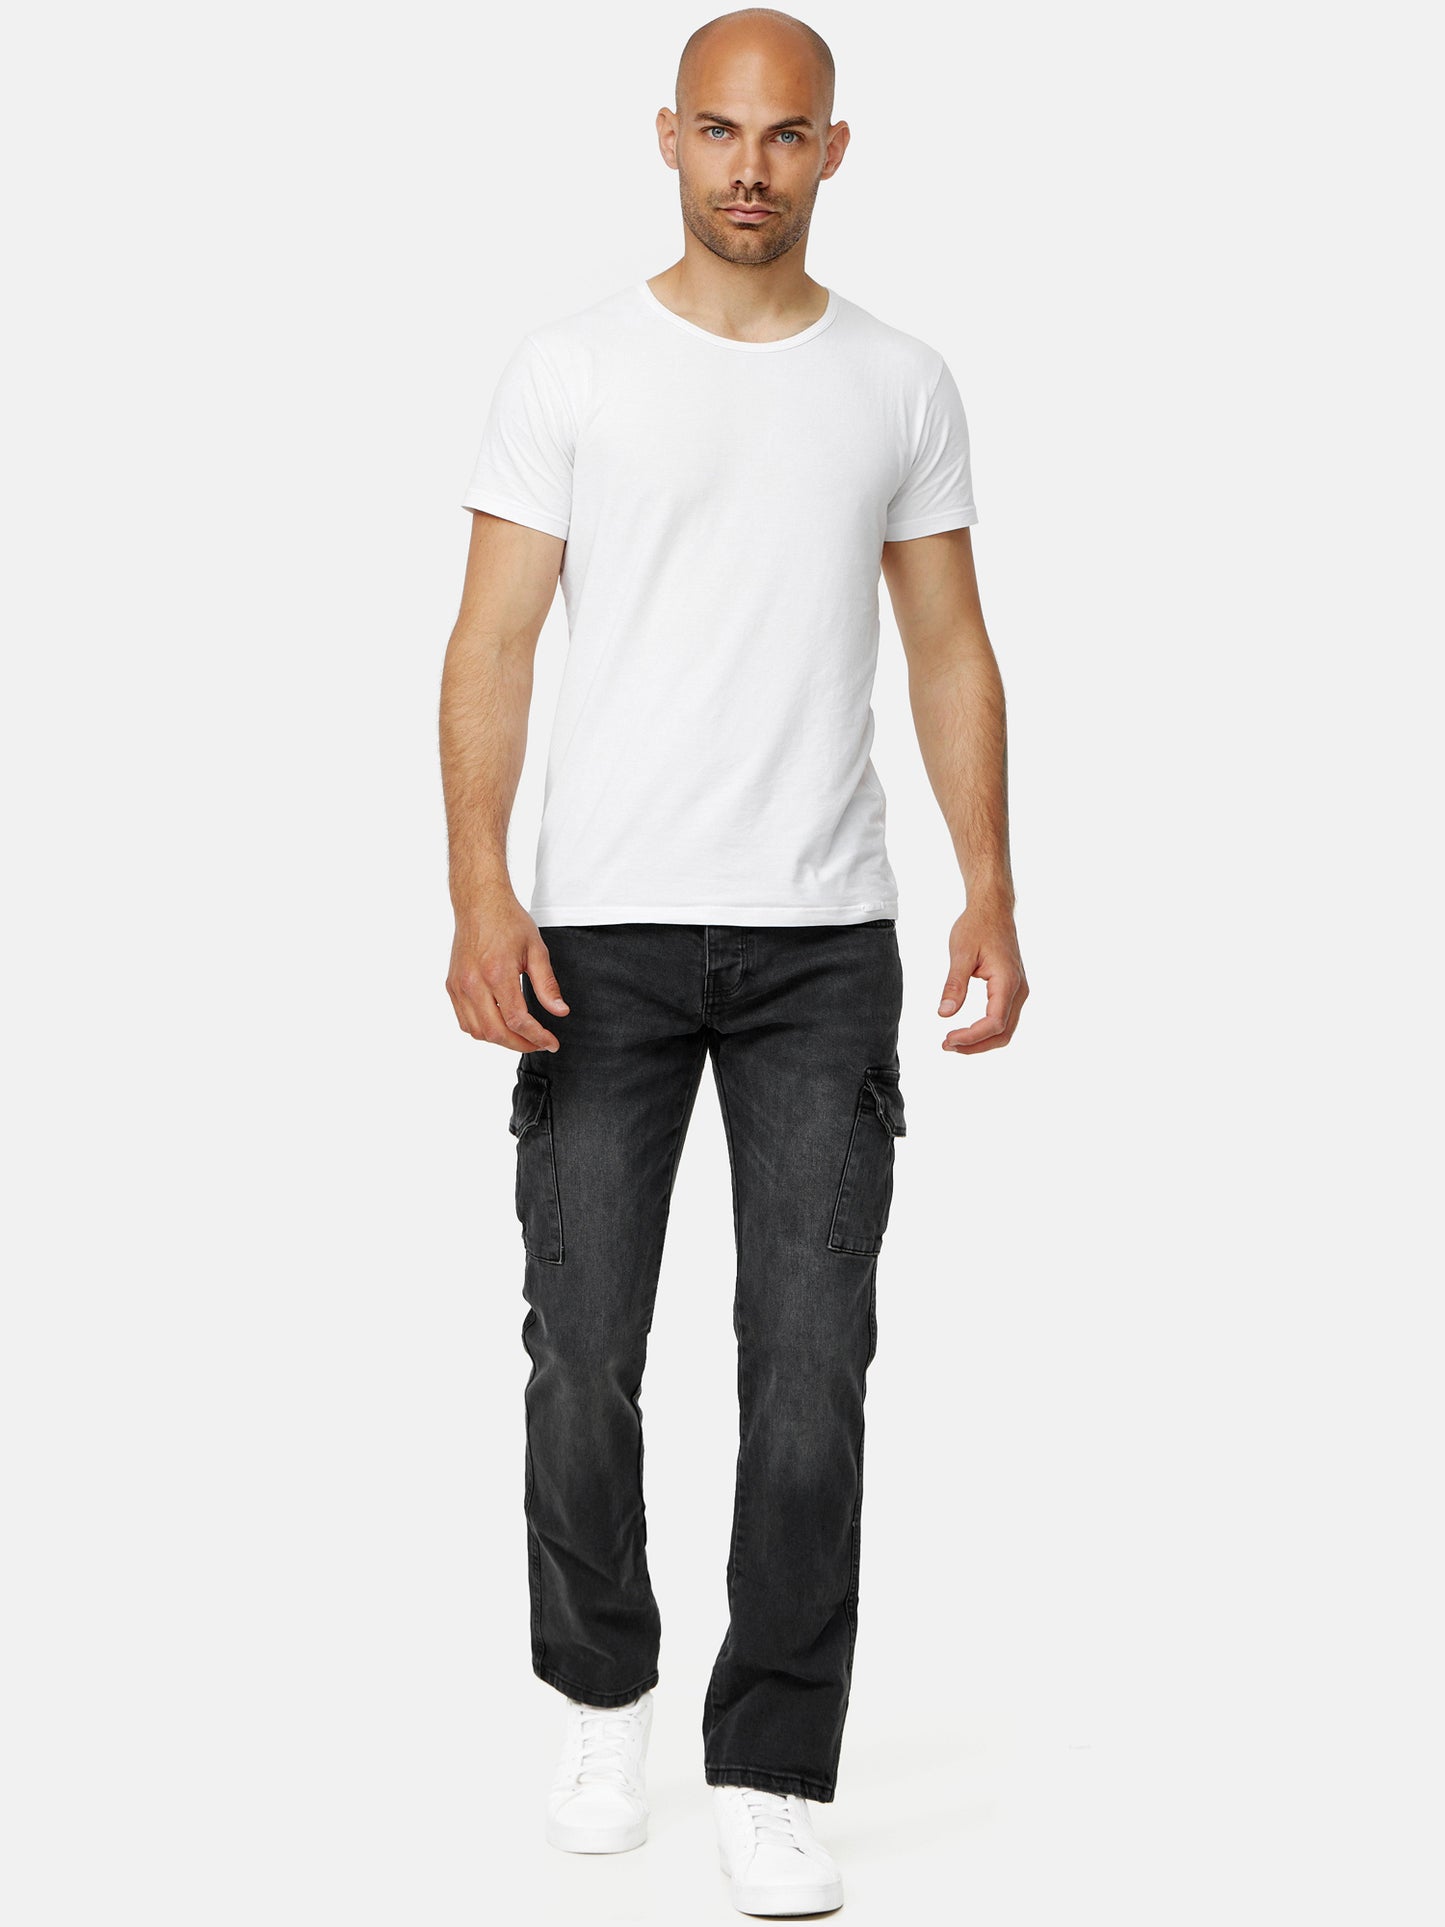 Tazzio Herren Cargo Jeans Regular Fit A104